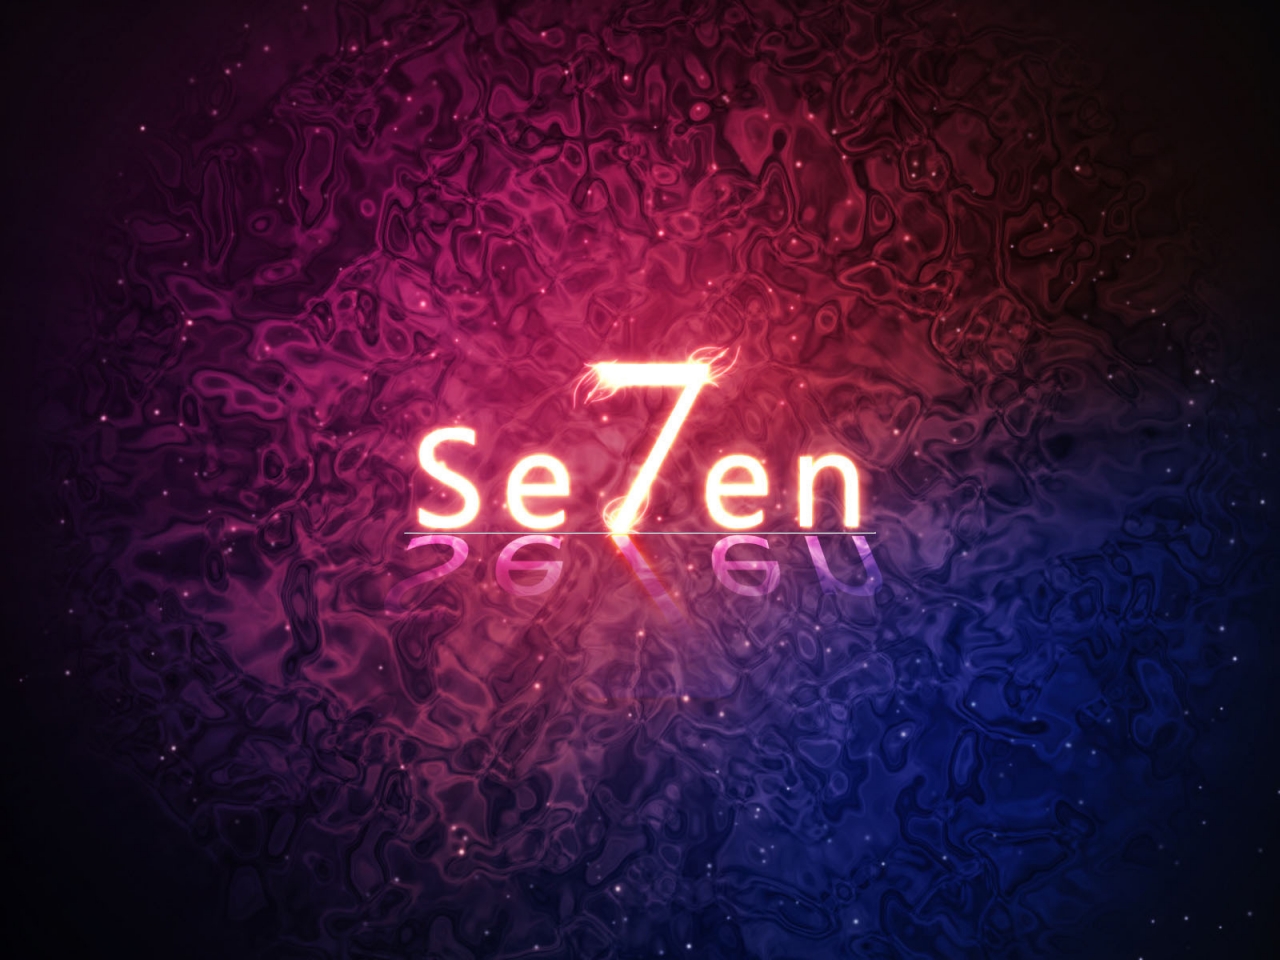 Se7en for 1280 x 960 resolution